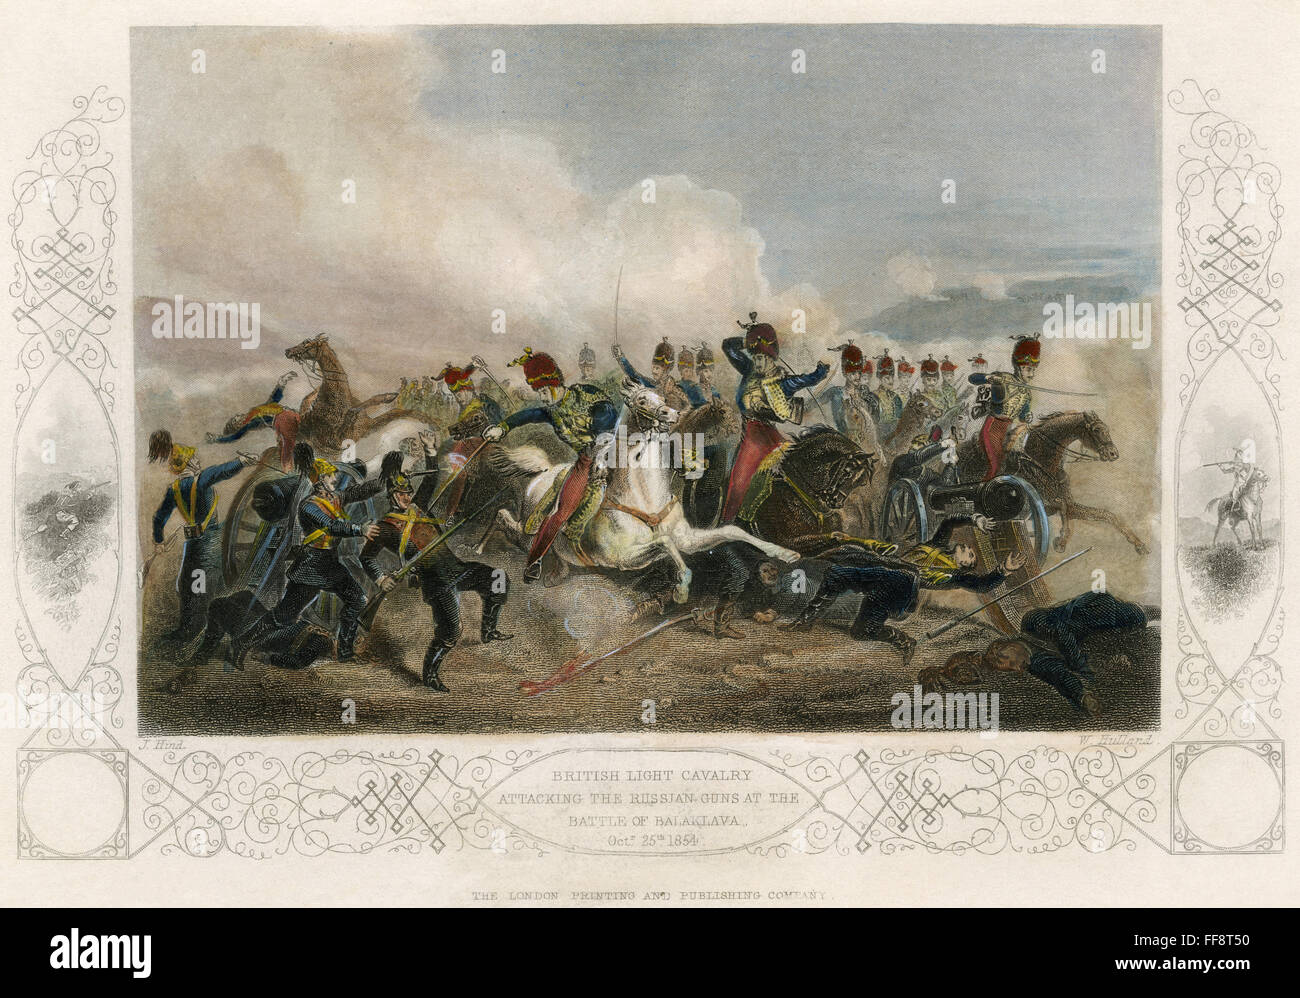 Guerre de Crimée : Brigade légère. /Nla Charge de la Brigade légère à Balaklava, 25 octobre 1854. Gravure sur acier, anglais, 1855. Banque D'Images